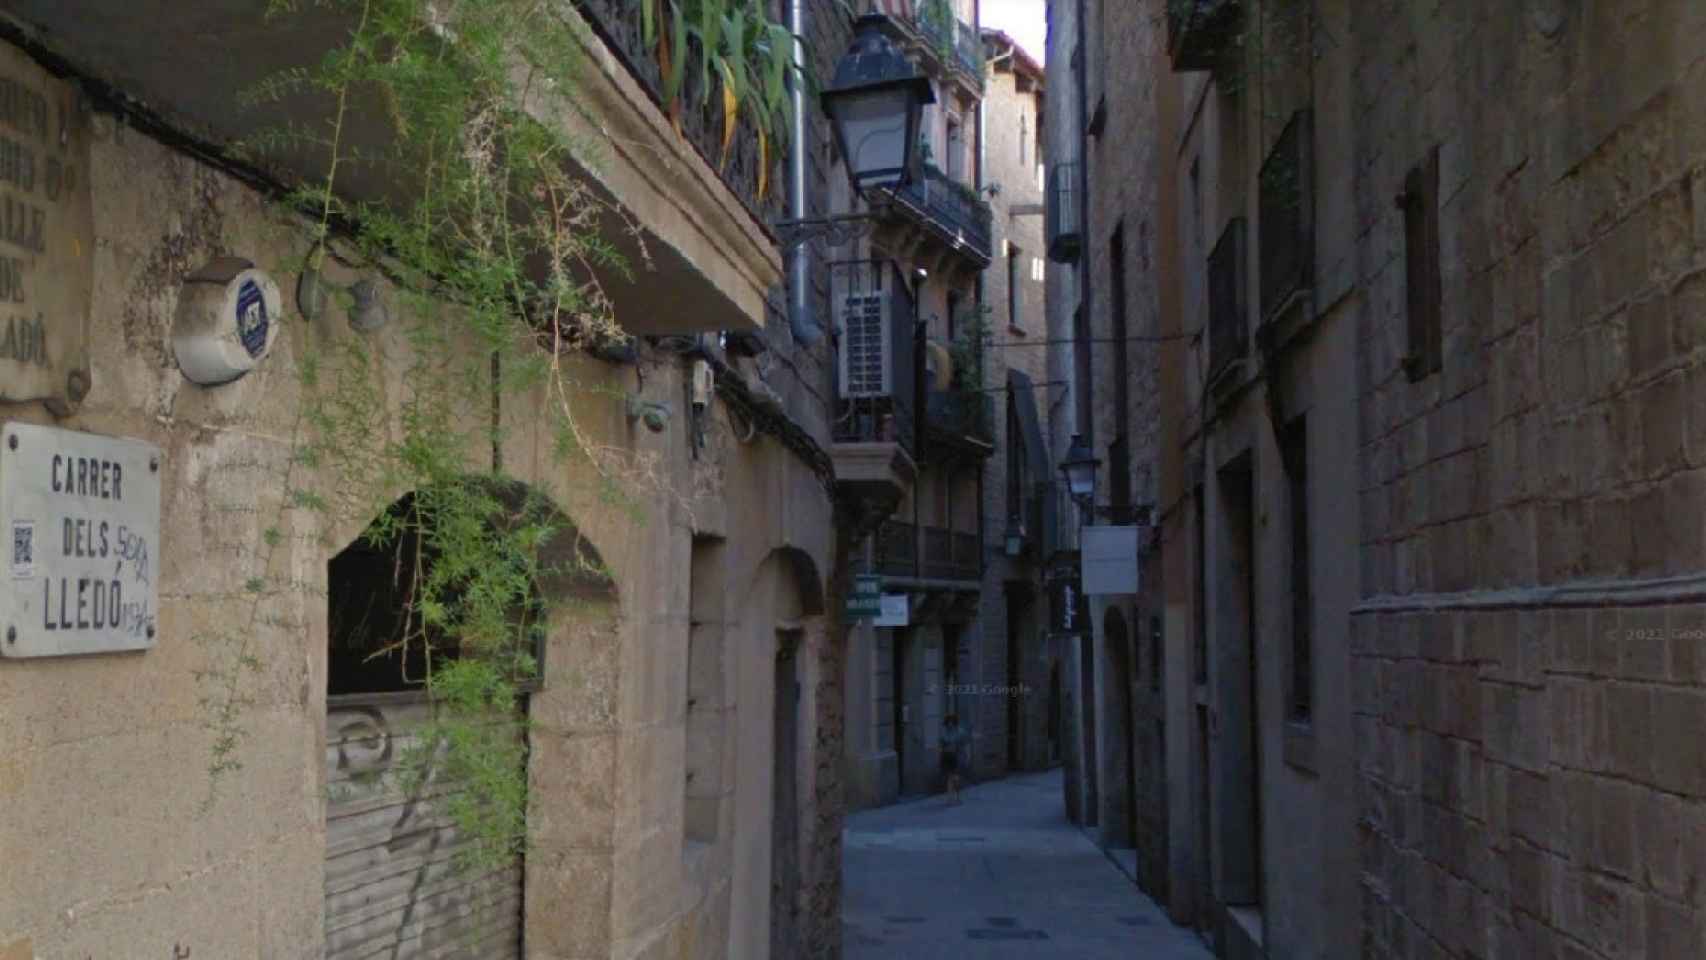 Los ladrones asaltaron al turista en la calle de los Lledó de Barcelona y se llevaron un reloj valorado en 800.000 euros / GOOGLE STREET VIEW